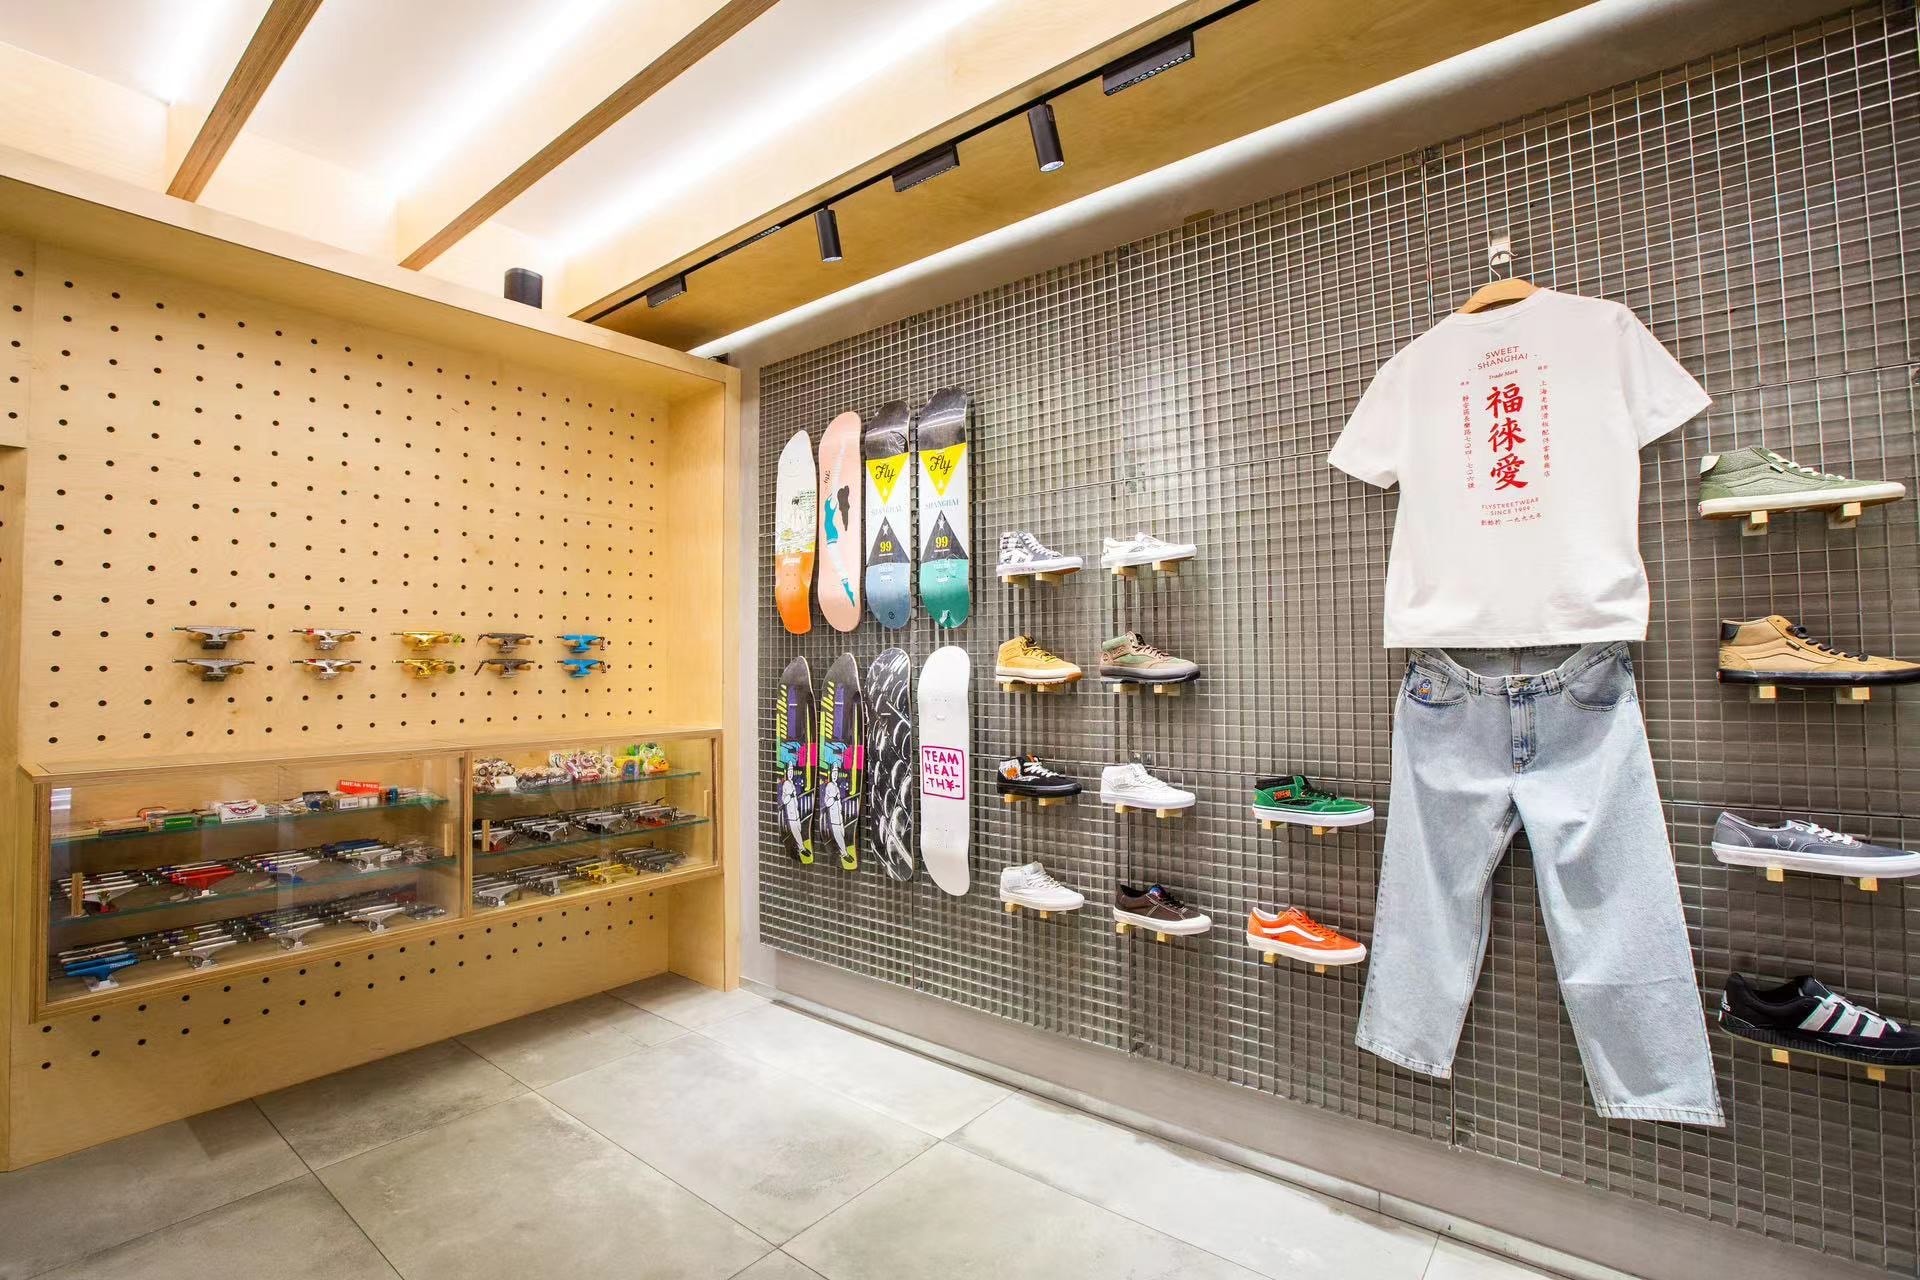 上海长乐路滑板店 Fly Streetwear 升级重开